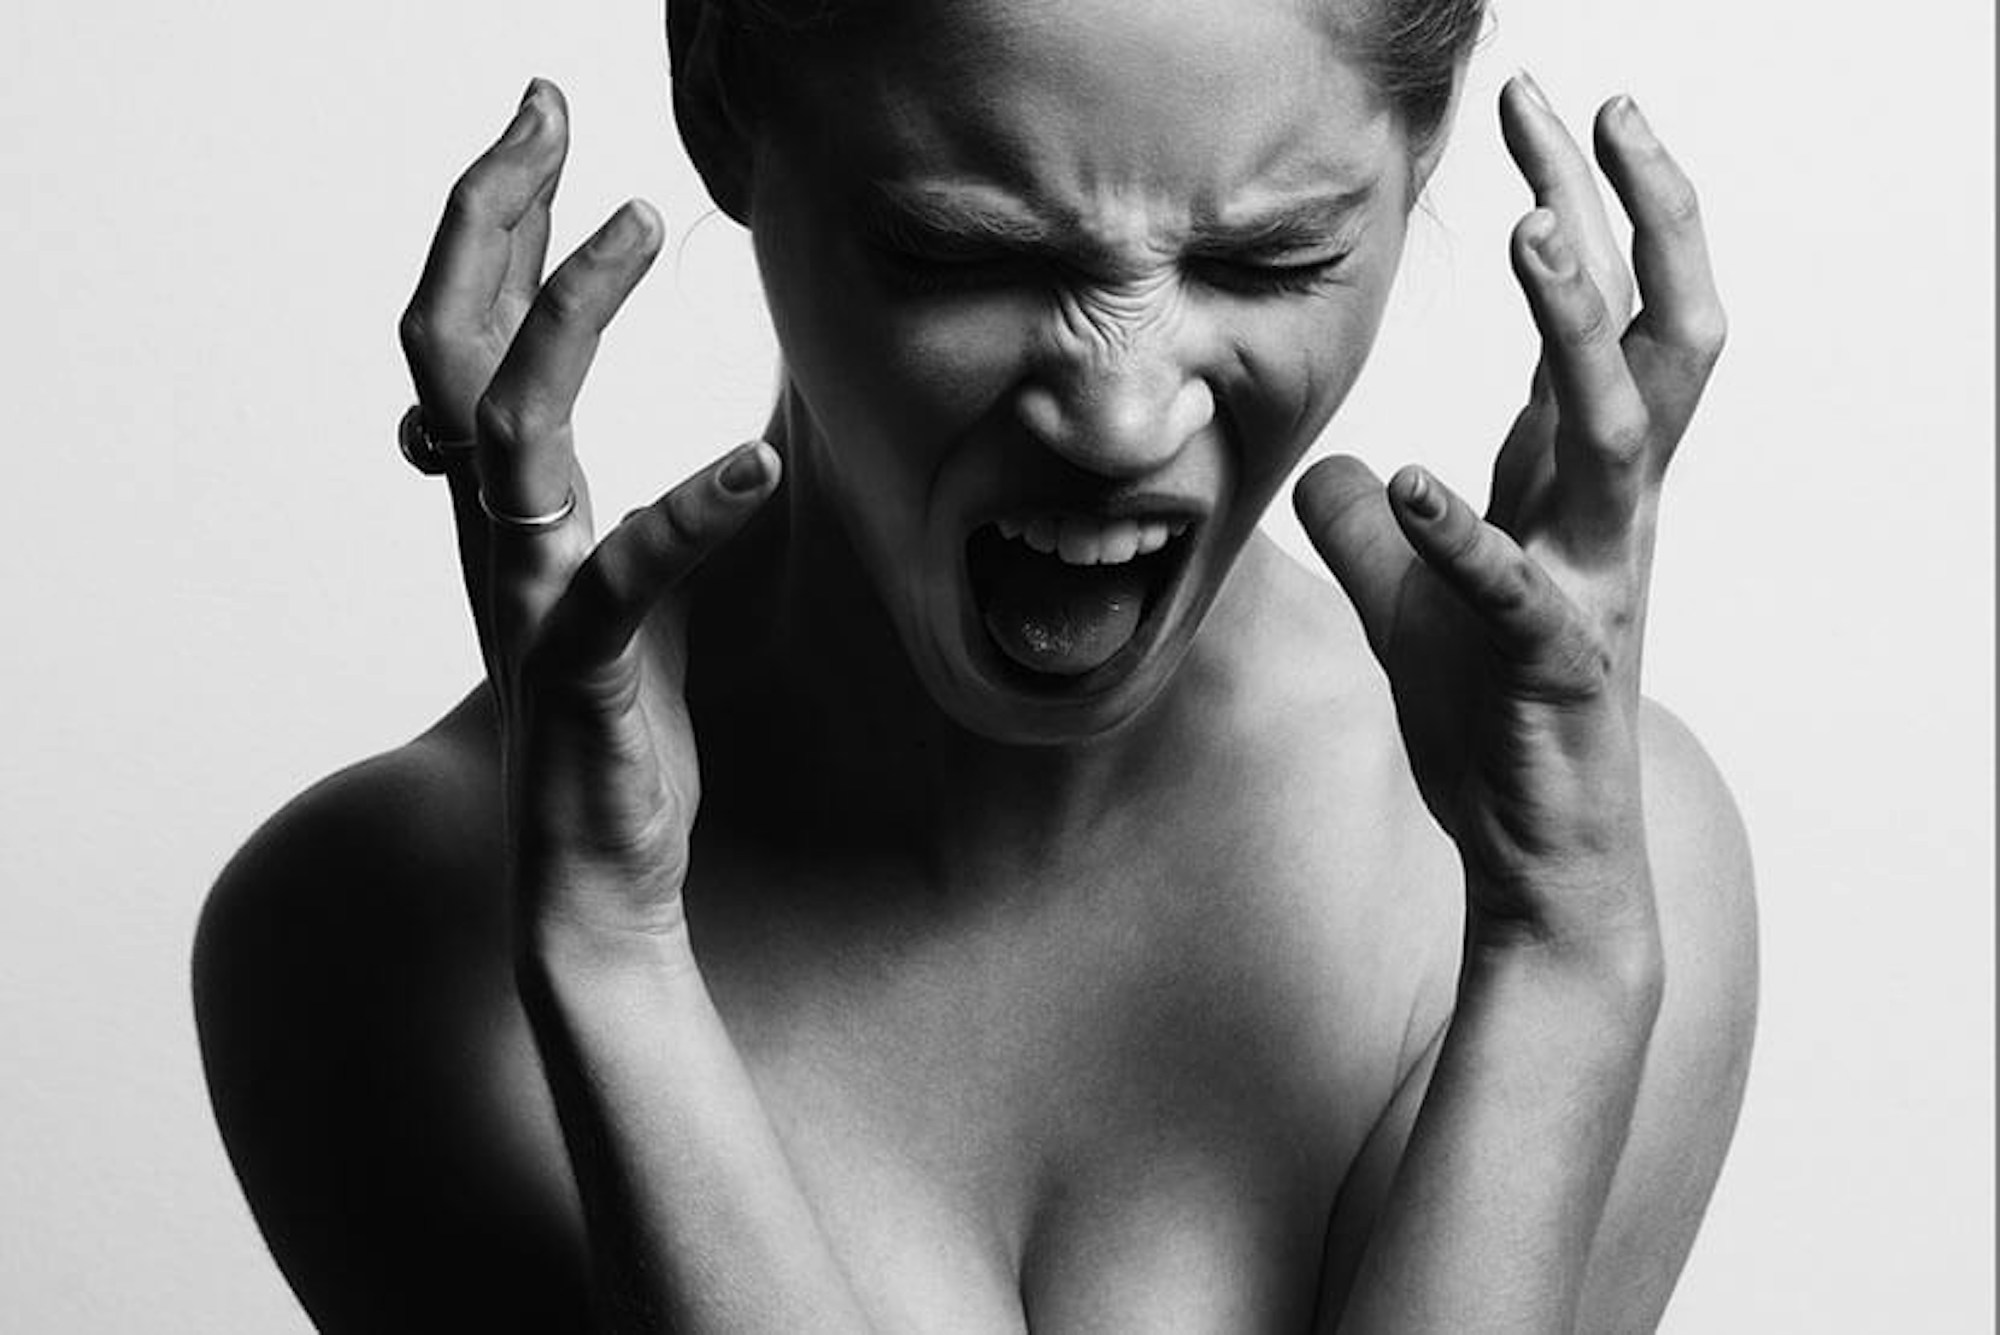 women screaming in frustration